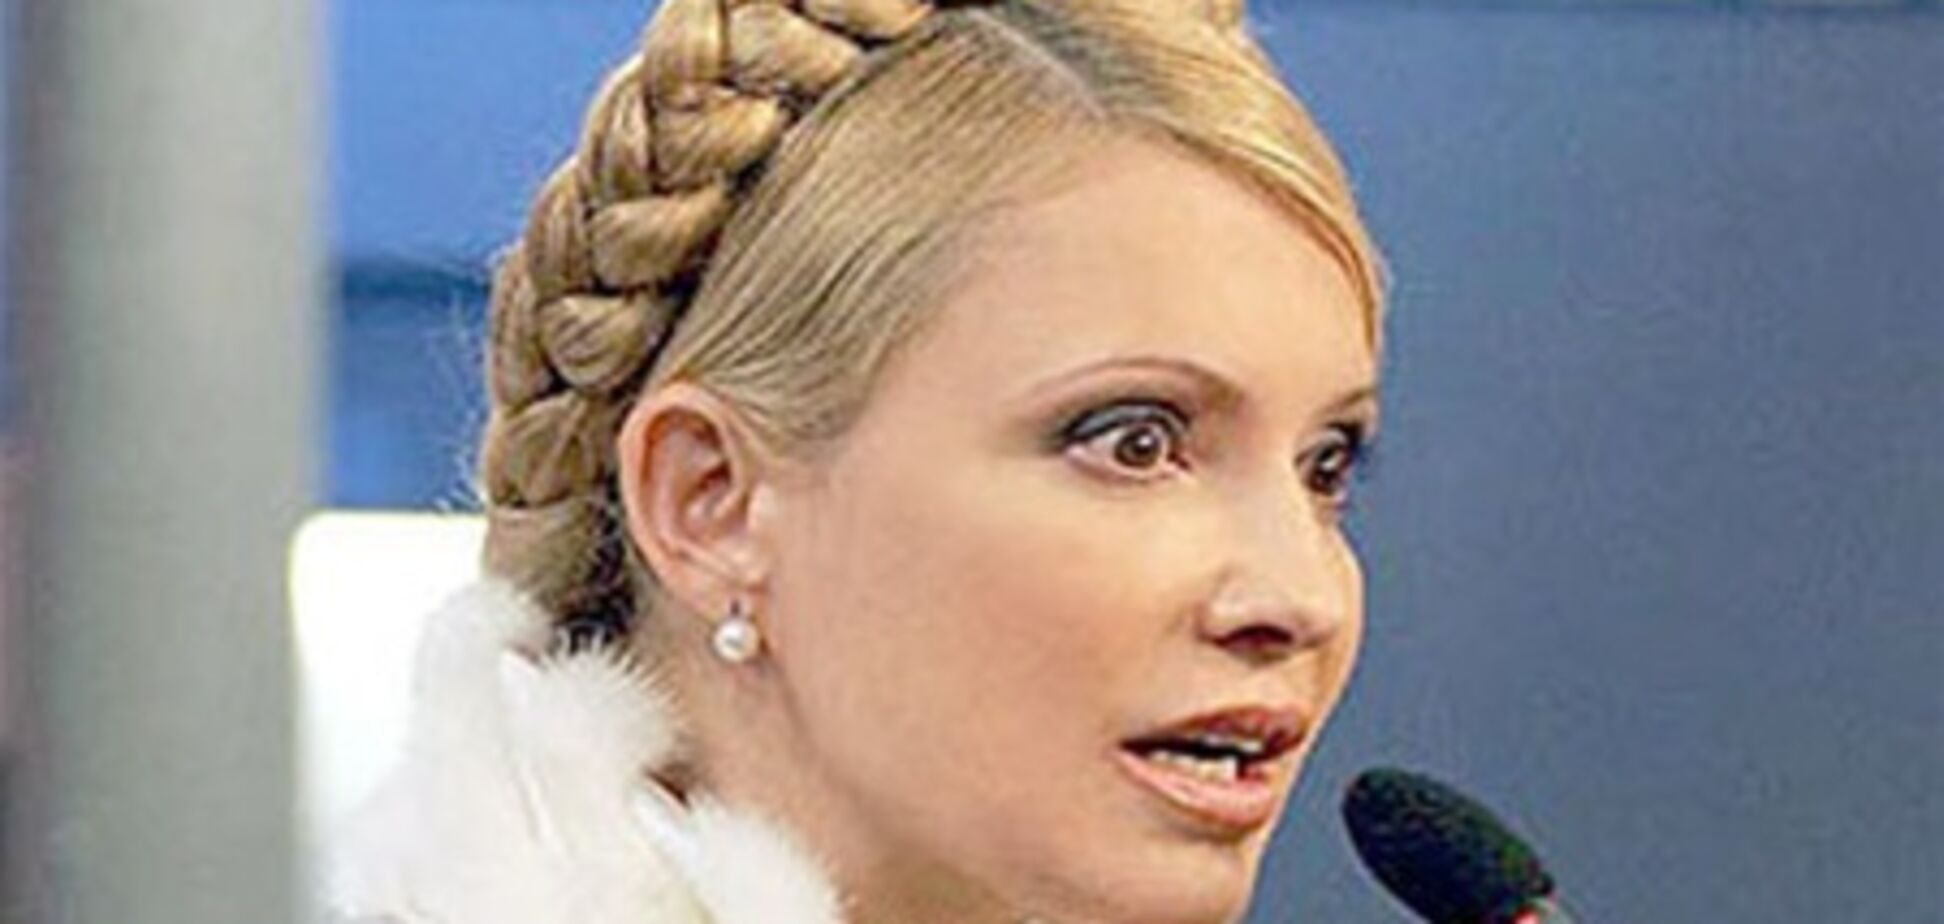 The Wall Street Journal розповів, як Тимошенко відмивала гроші